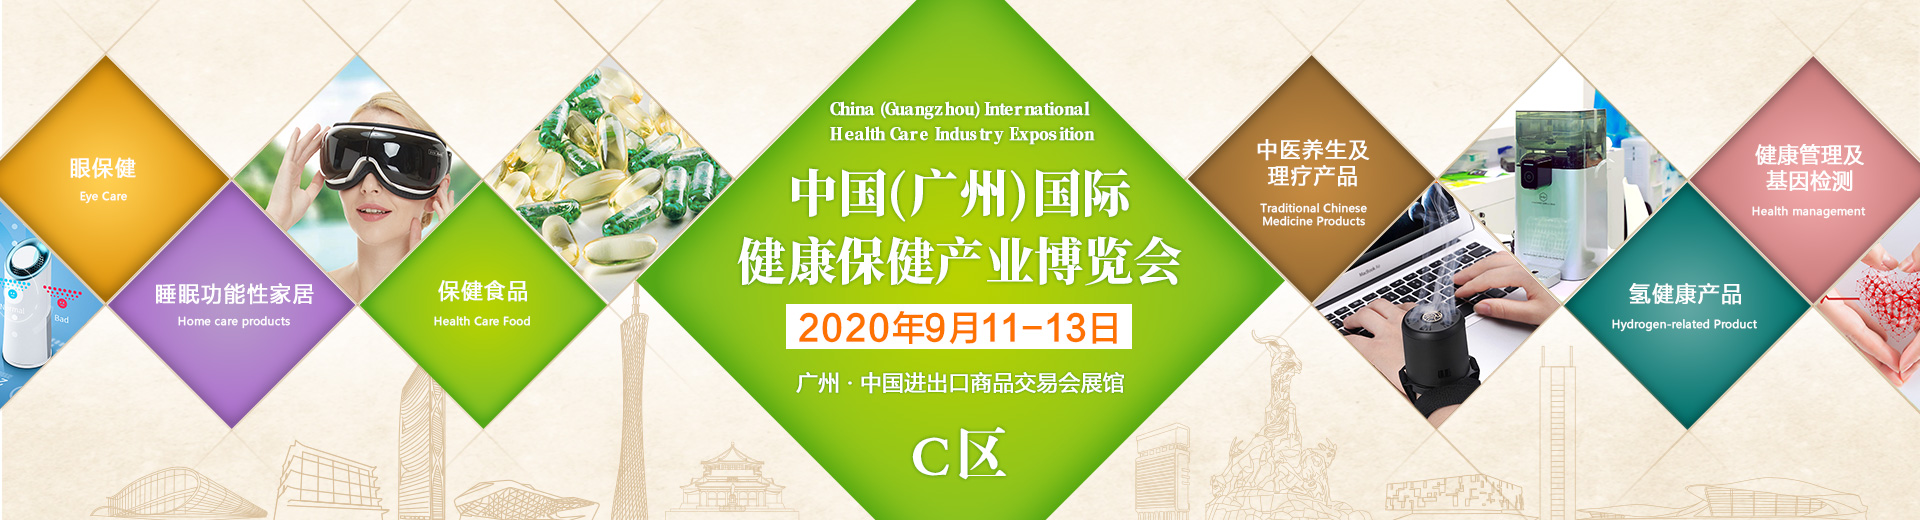 安徽艾灸护理产品/用品2020广州健康保健展 世歌会展供应